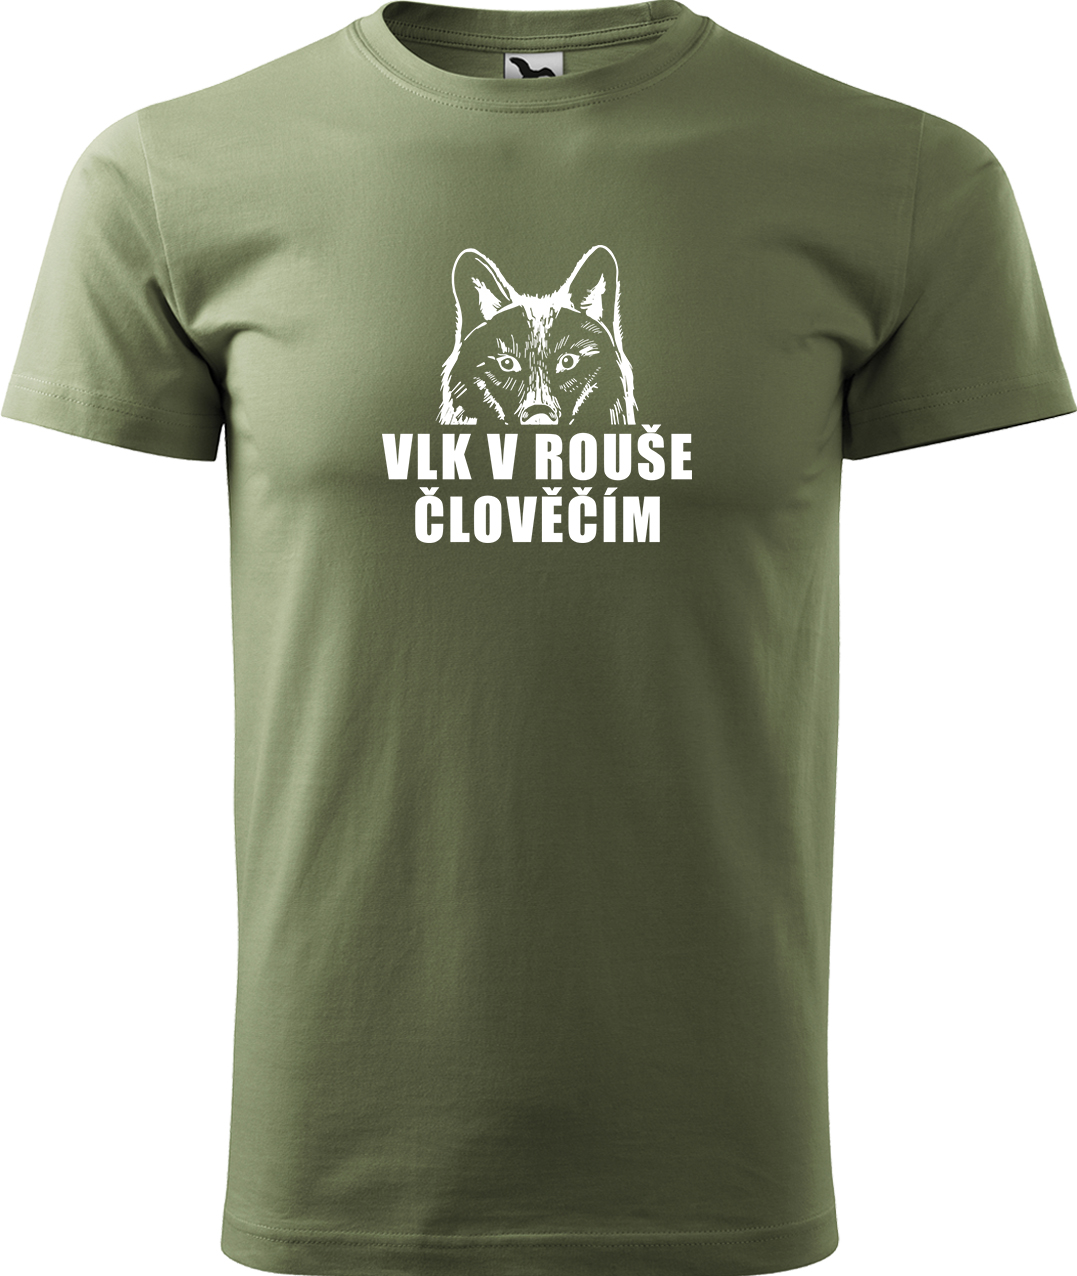 Pánské tričko s vlkem - Vlk v rouše člověčím Velikost: 4XL, Barva: Světlá khaki (28), Střih: pánský